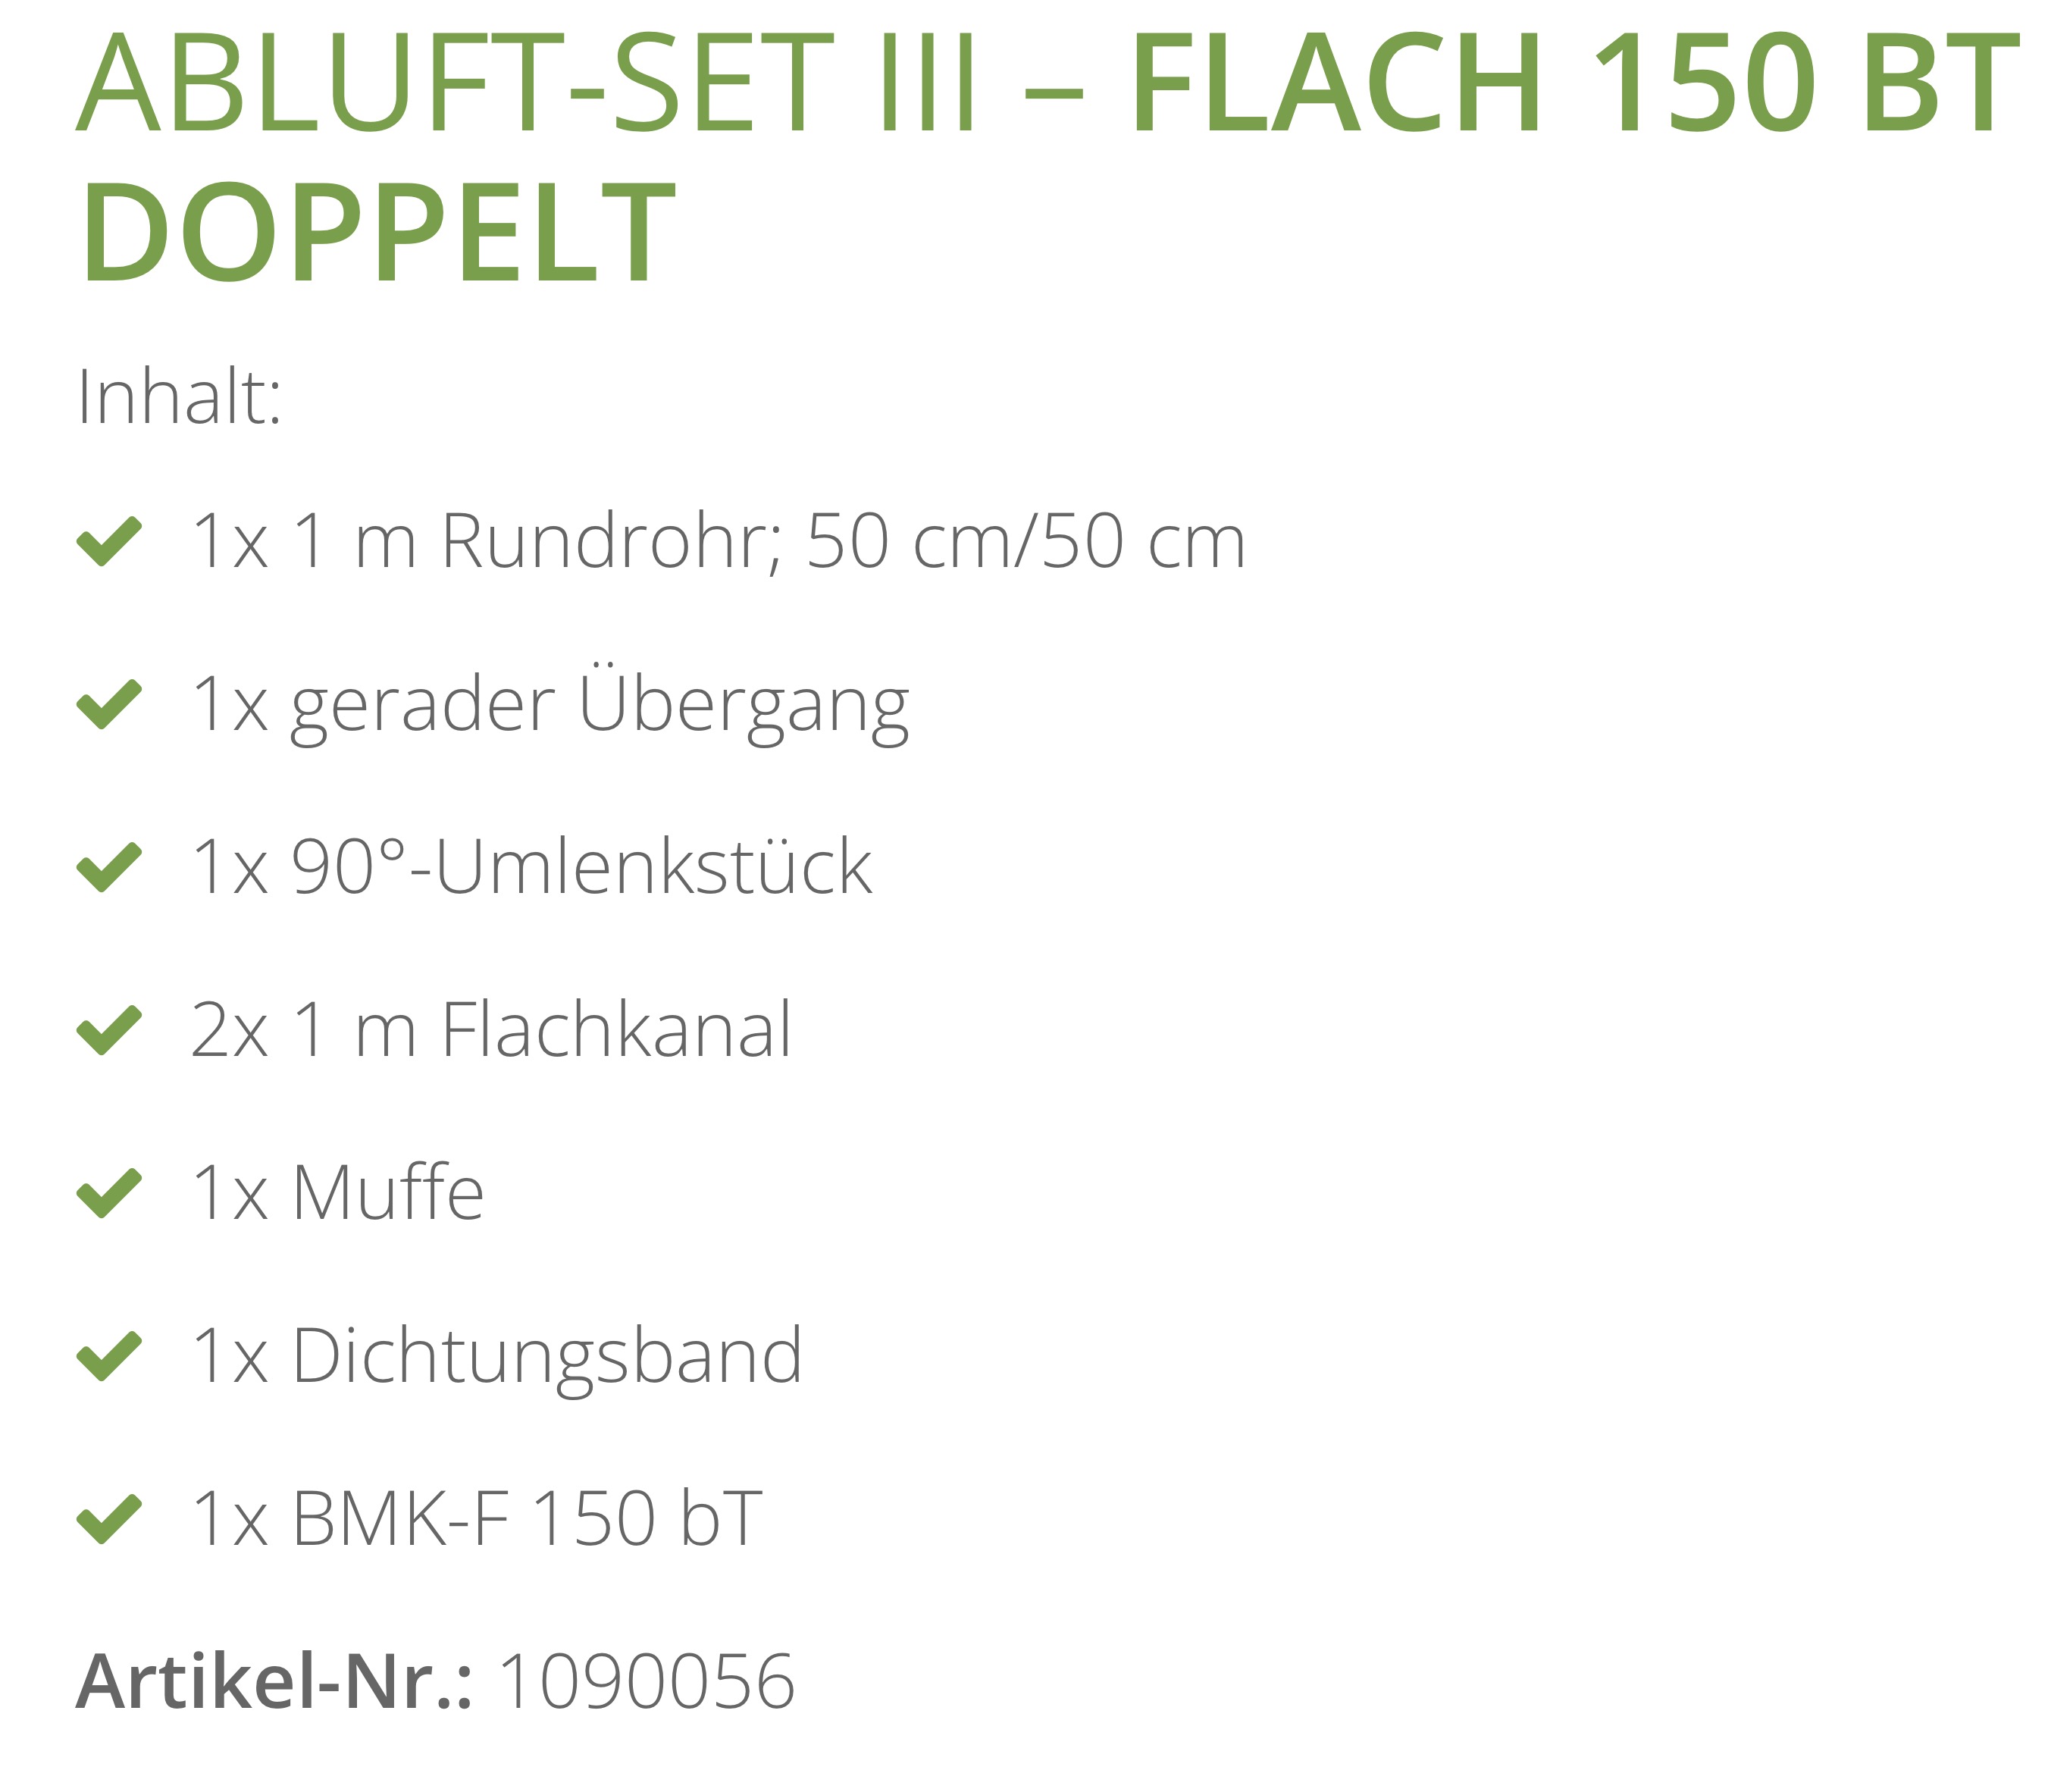 Berbel Abluftset III Flach 150 bT 1090056